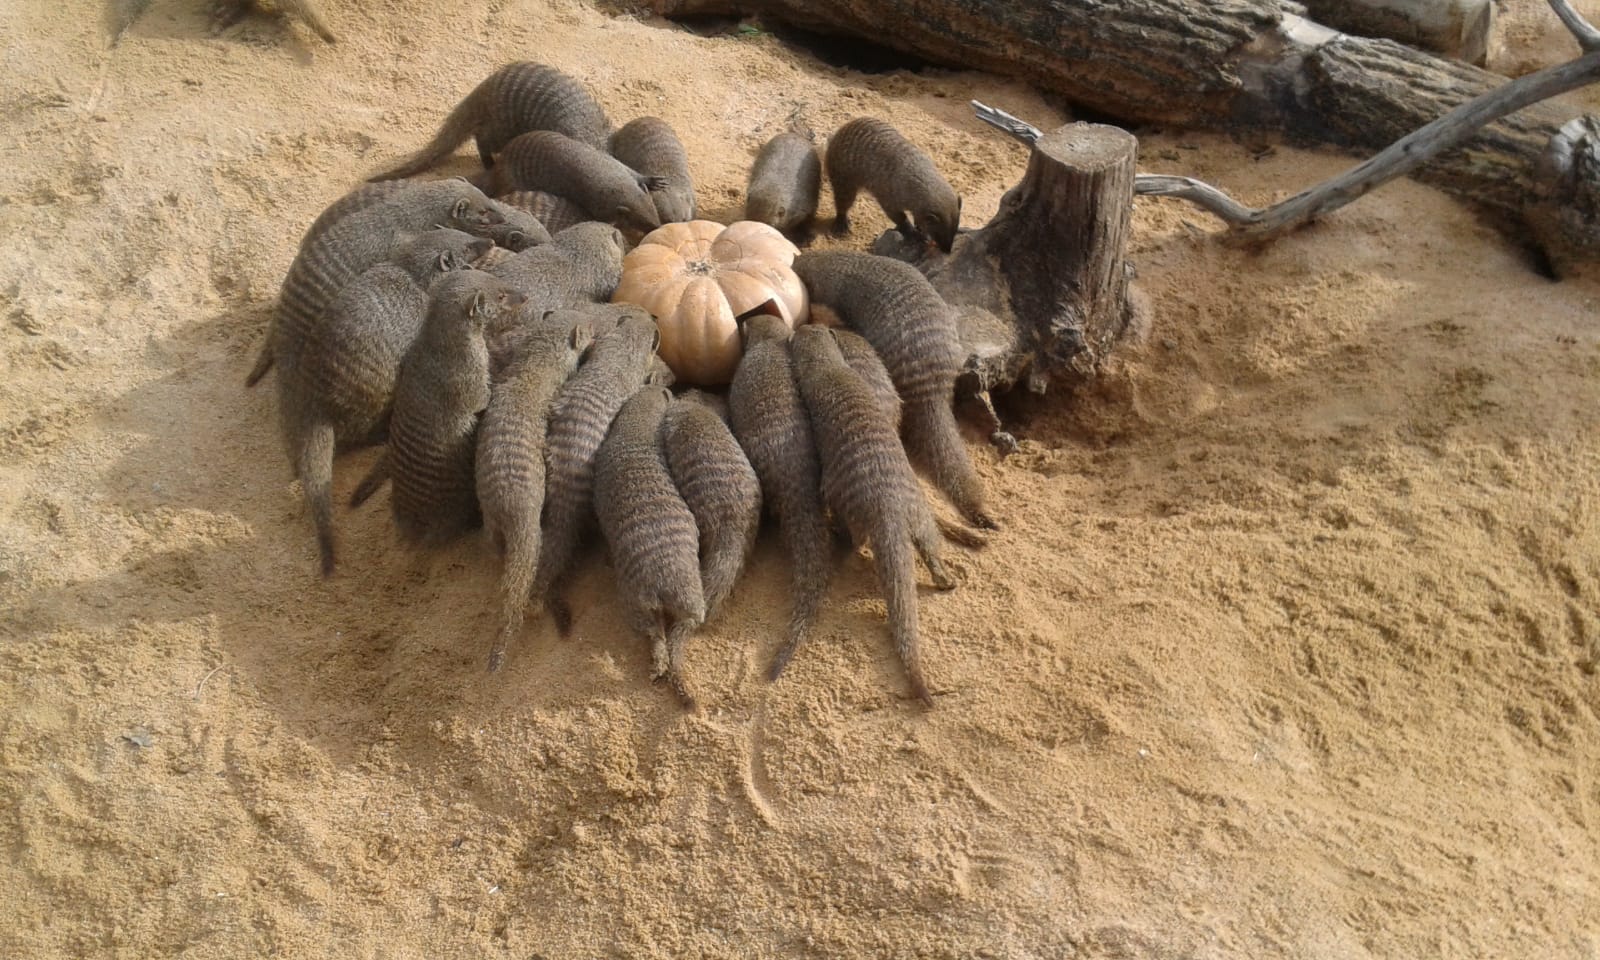 El grup de les mangostes buscant menjar dins la carbassa